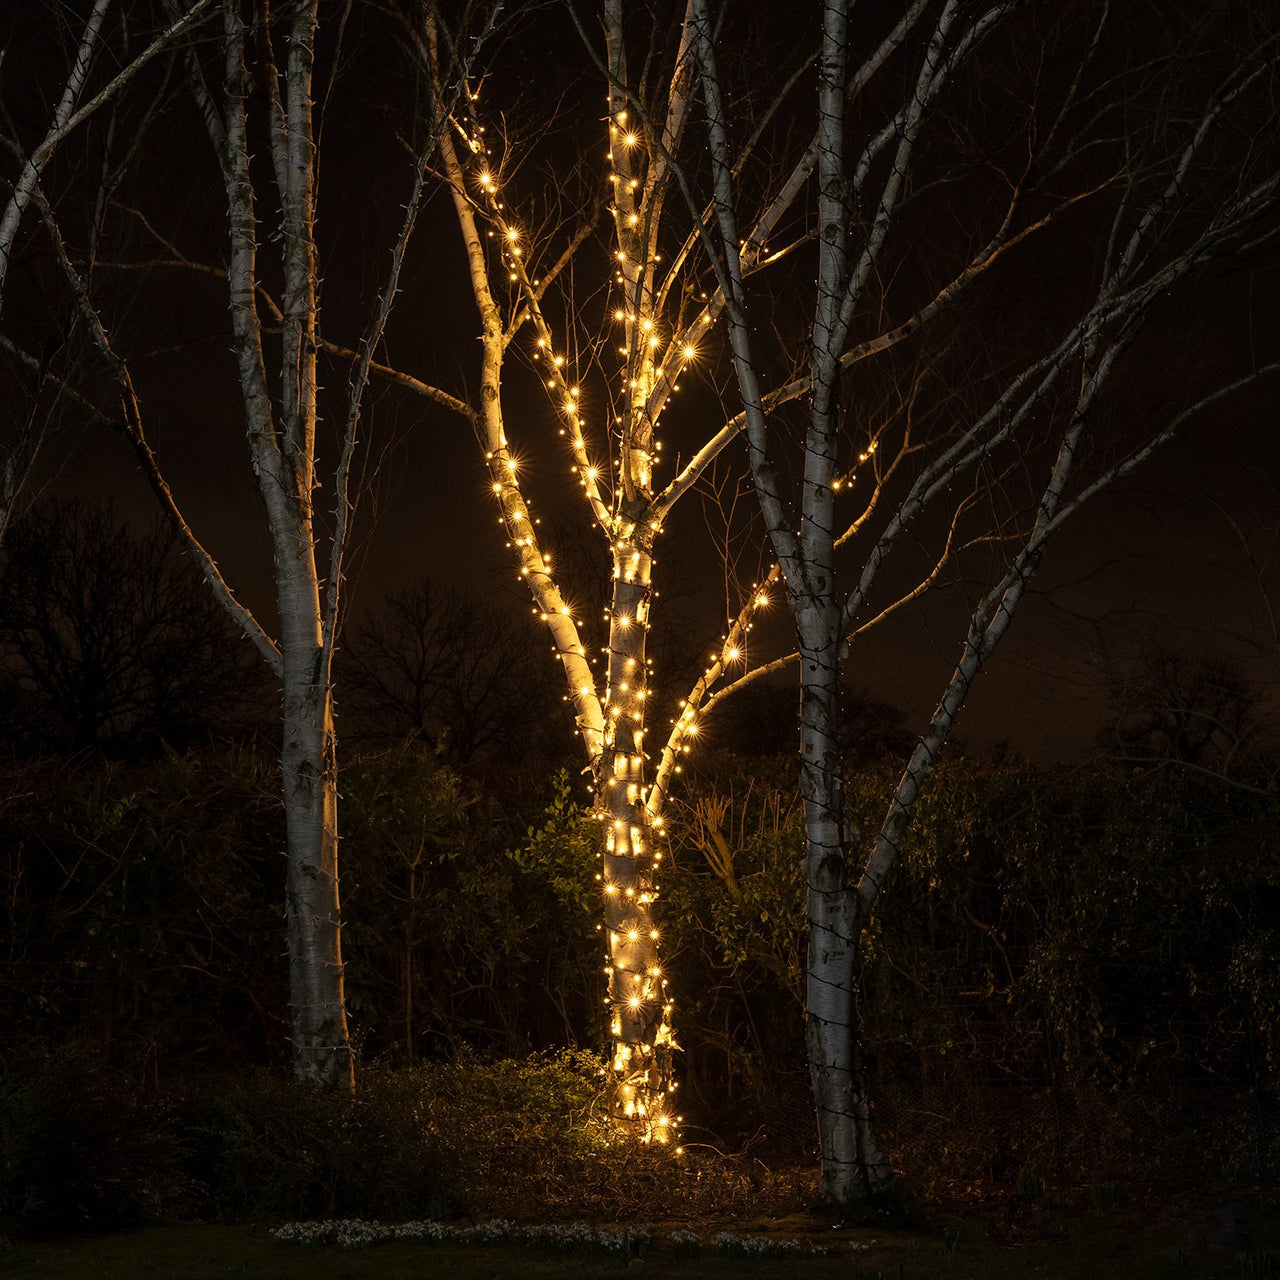 Generic - Guirlande lumineuse LED 100m 1000LEDs extérieur, éclairage de  décoration de Noël avec 8 modes, étanche Ip44, décoration de lumière blanche  chaude pour la maison, le jardin, la fête de l'arbre